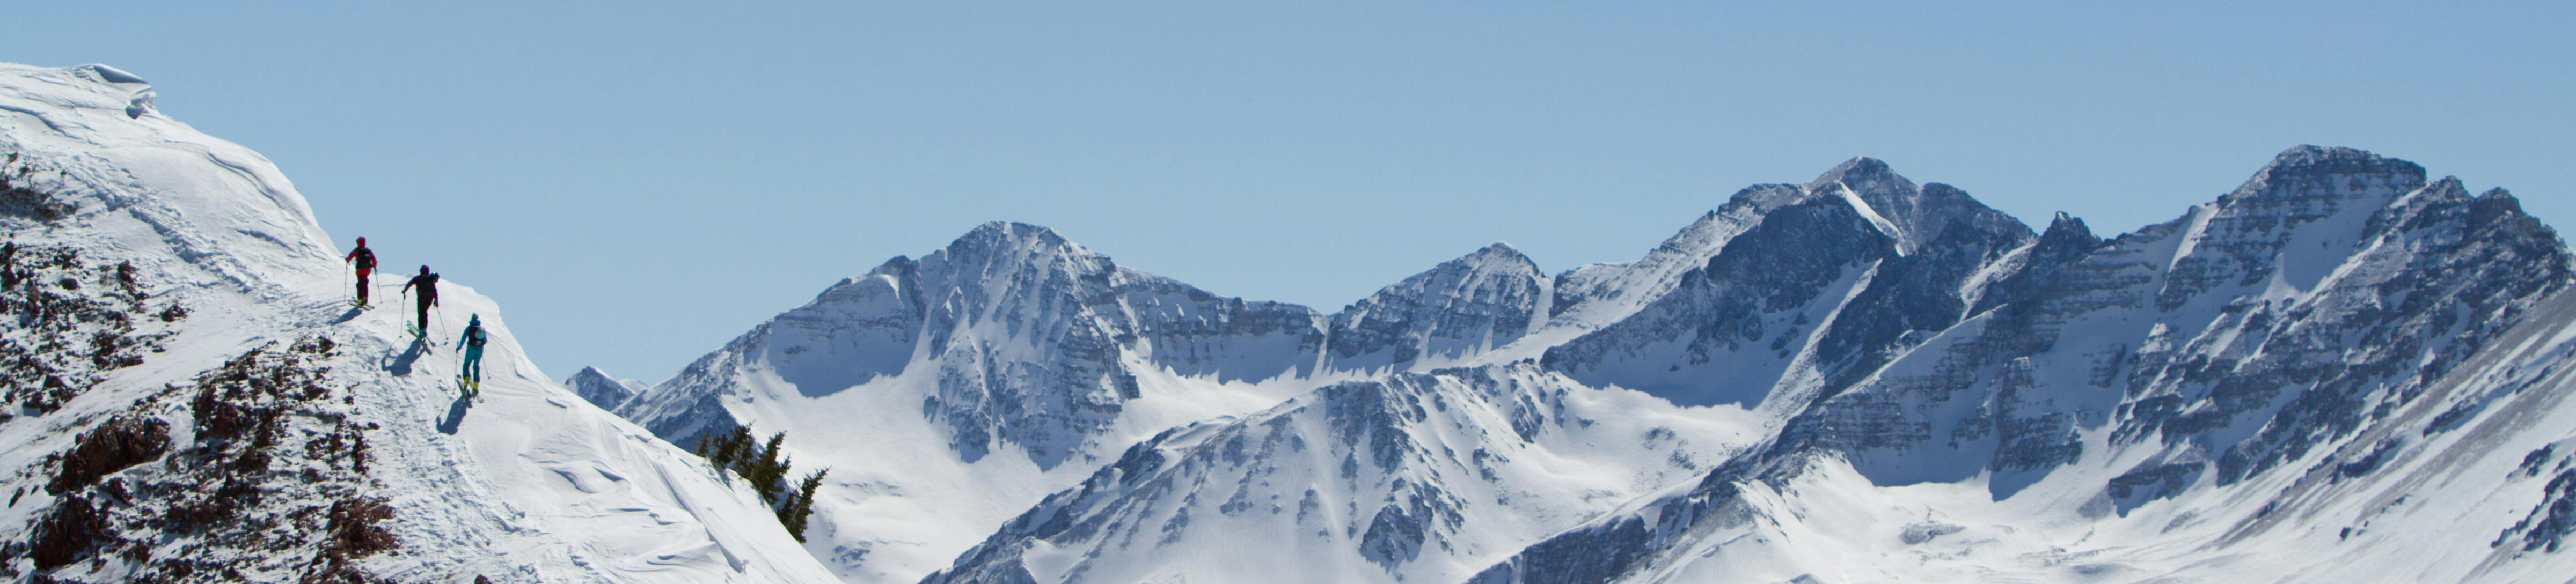 Three skiers traverse a mountain ridge